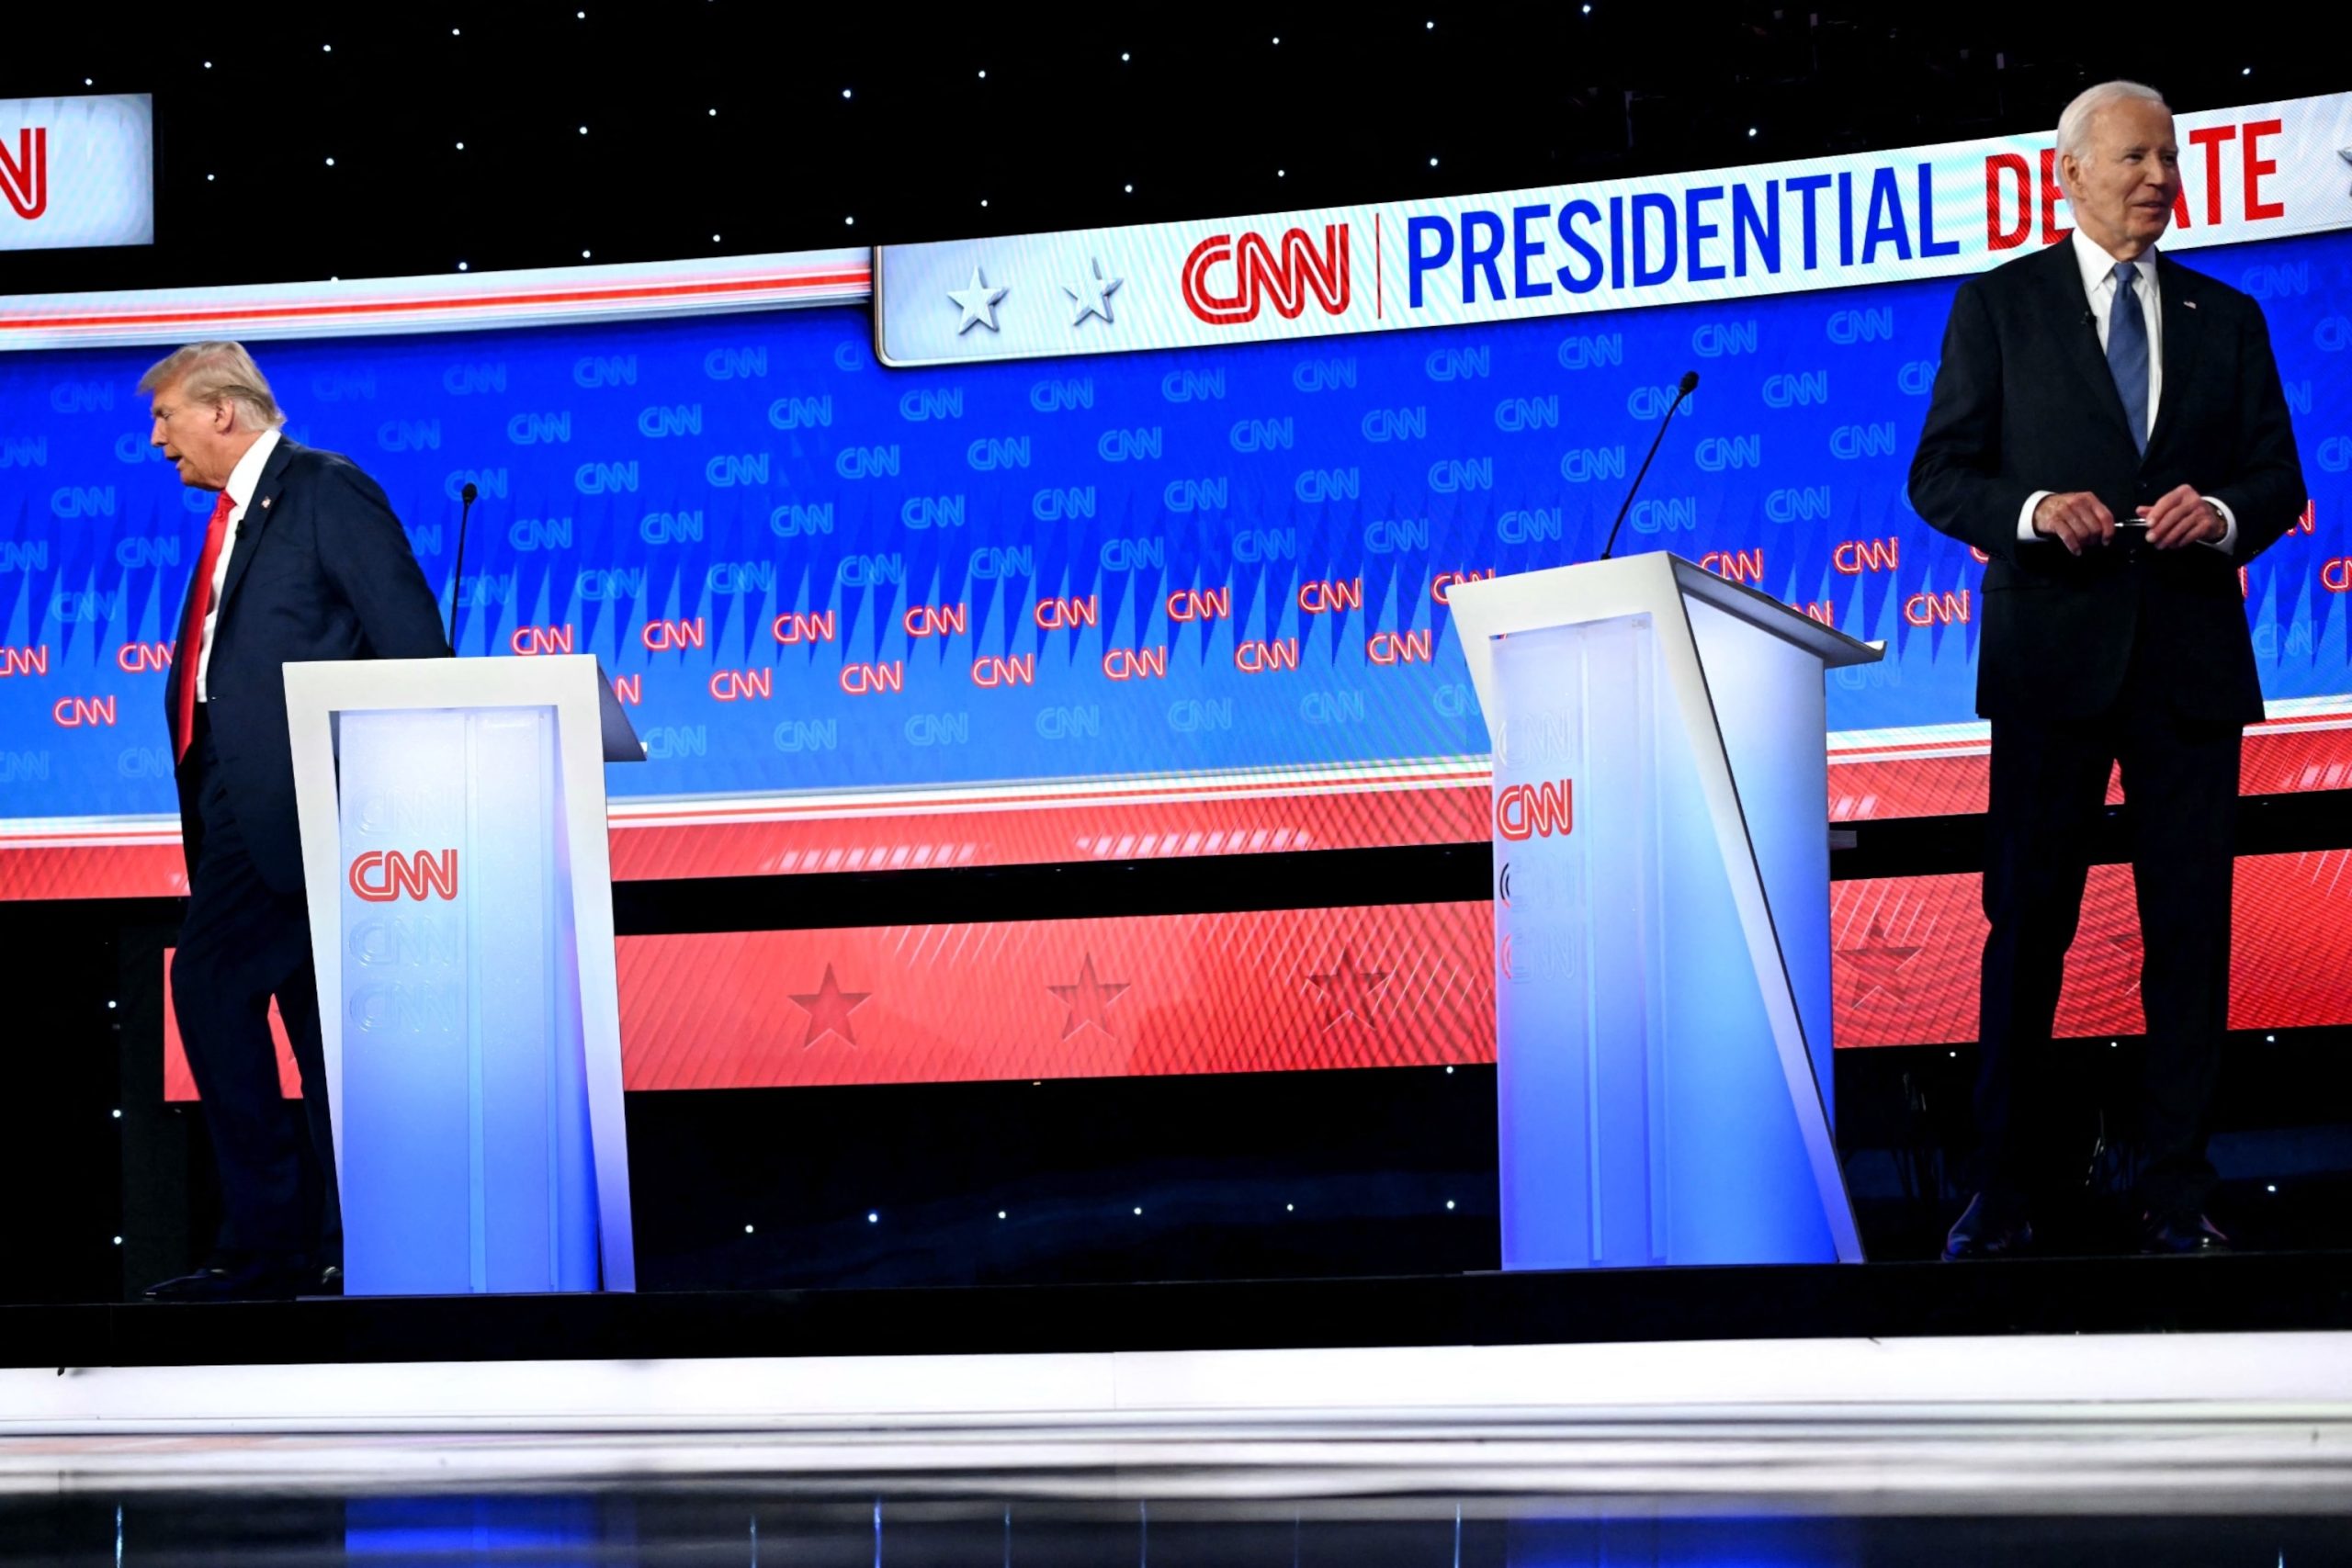 Analysis of How Biden's Age is Evident in Tonight's Debate